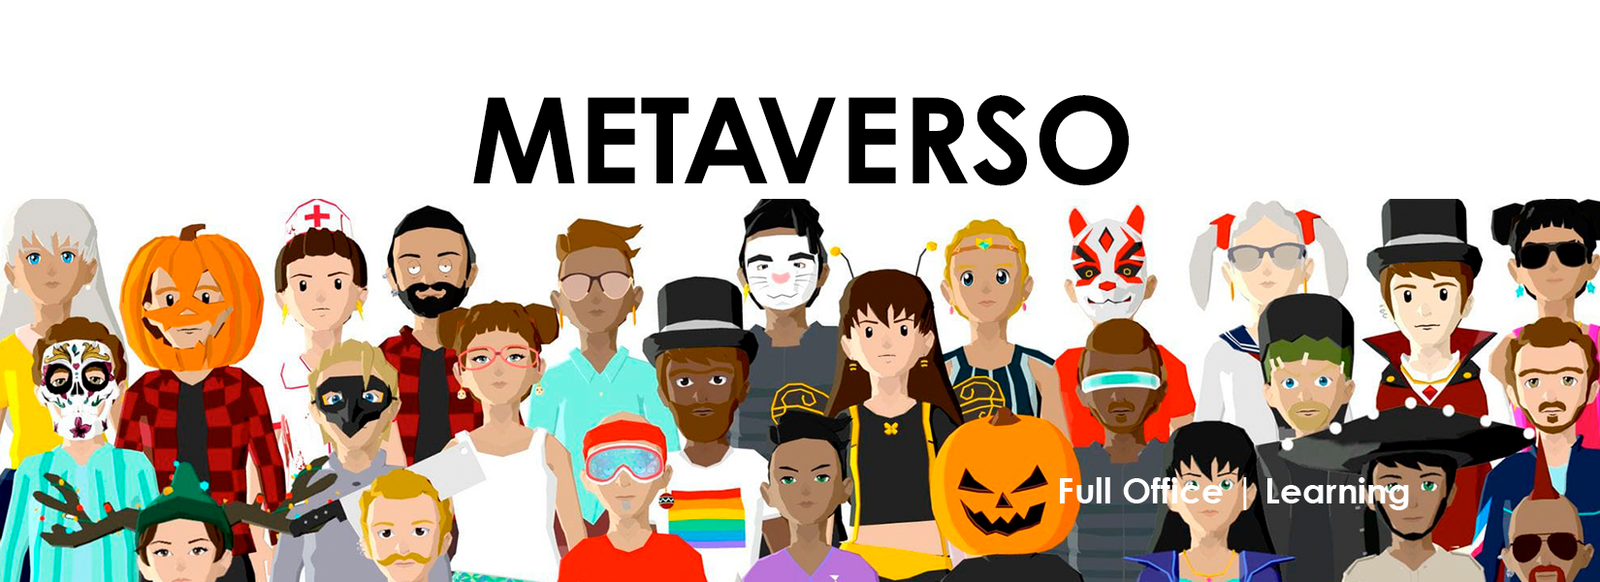 ¿Que es el metaverso? (Explicación completa) FullOffice.com